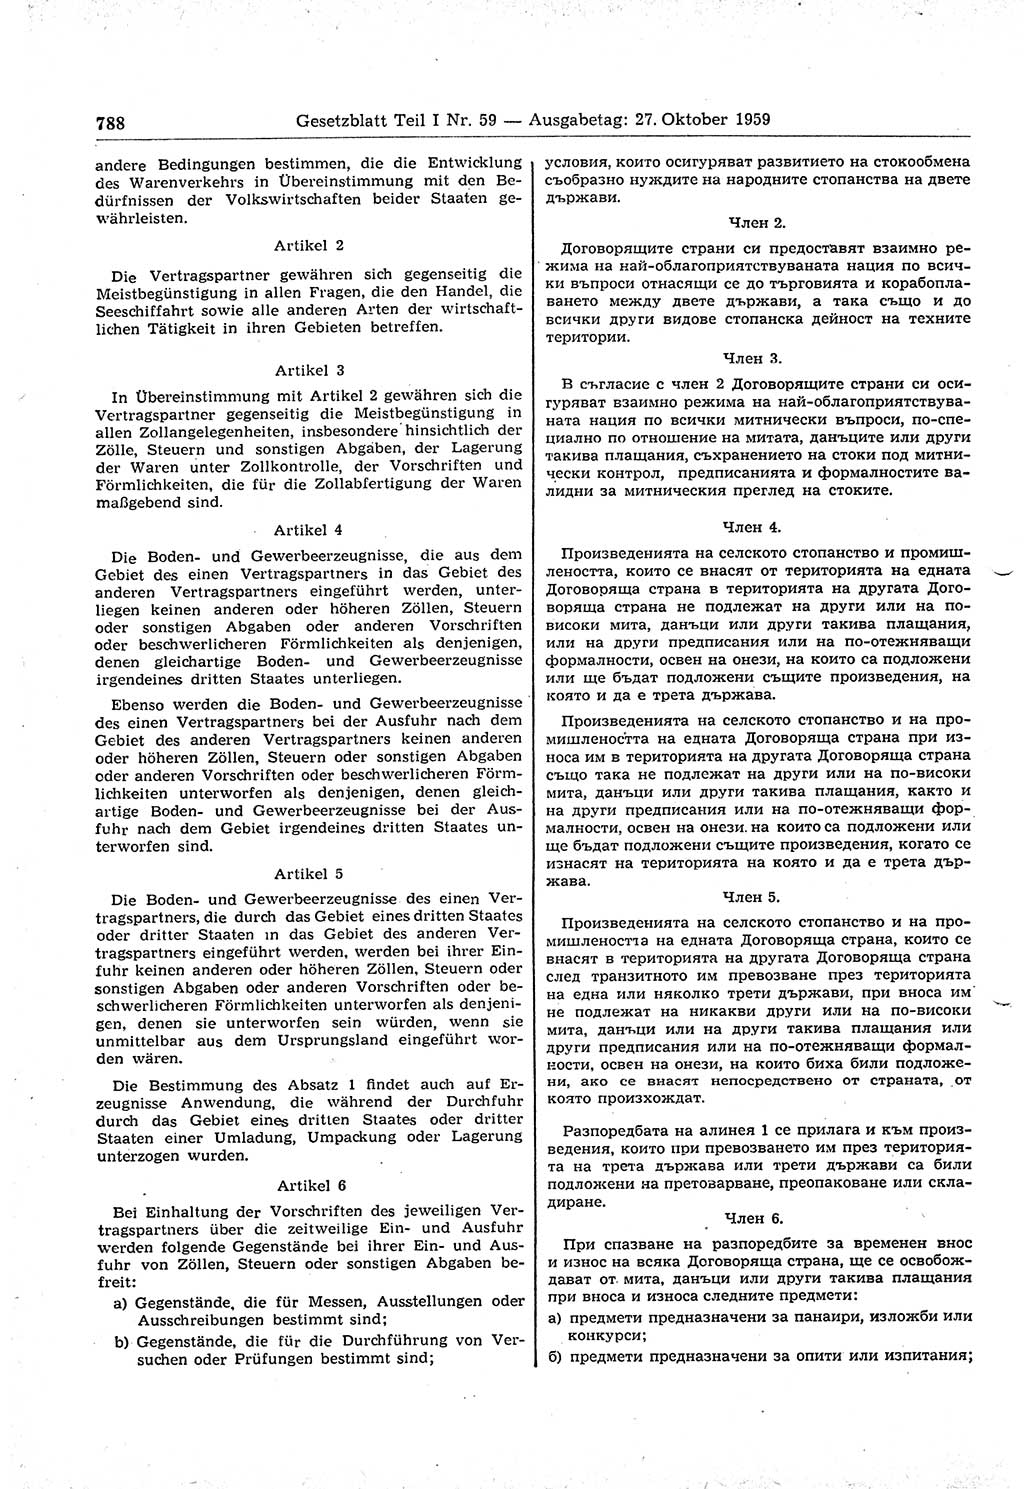 Gesetzblatt (GBl.) der Deutschen Demokratischen Republik (DDR) Teil Ⅰ 1959, Seite 788 (GBl. DDR Ⅰ 1959, S. 788)